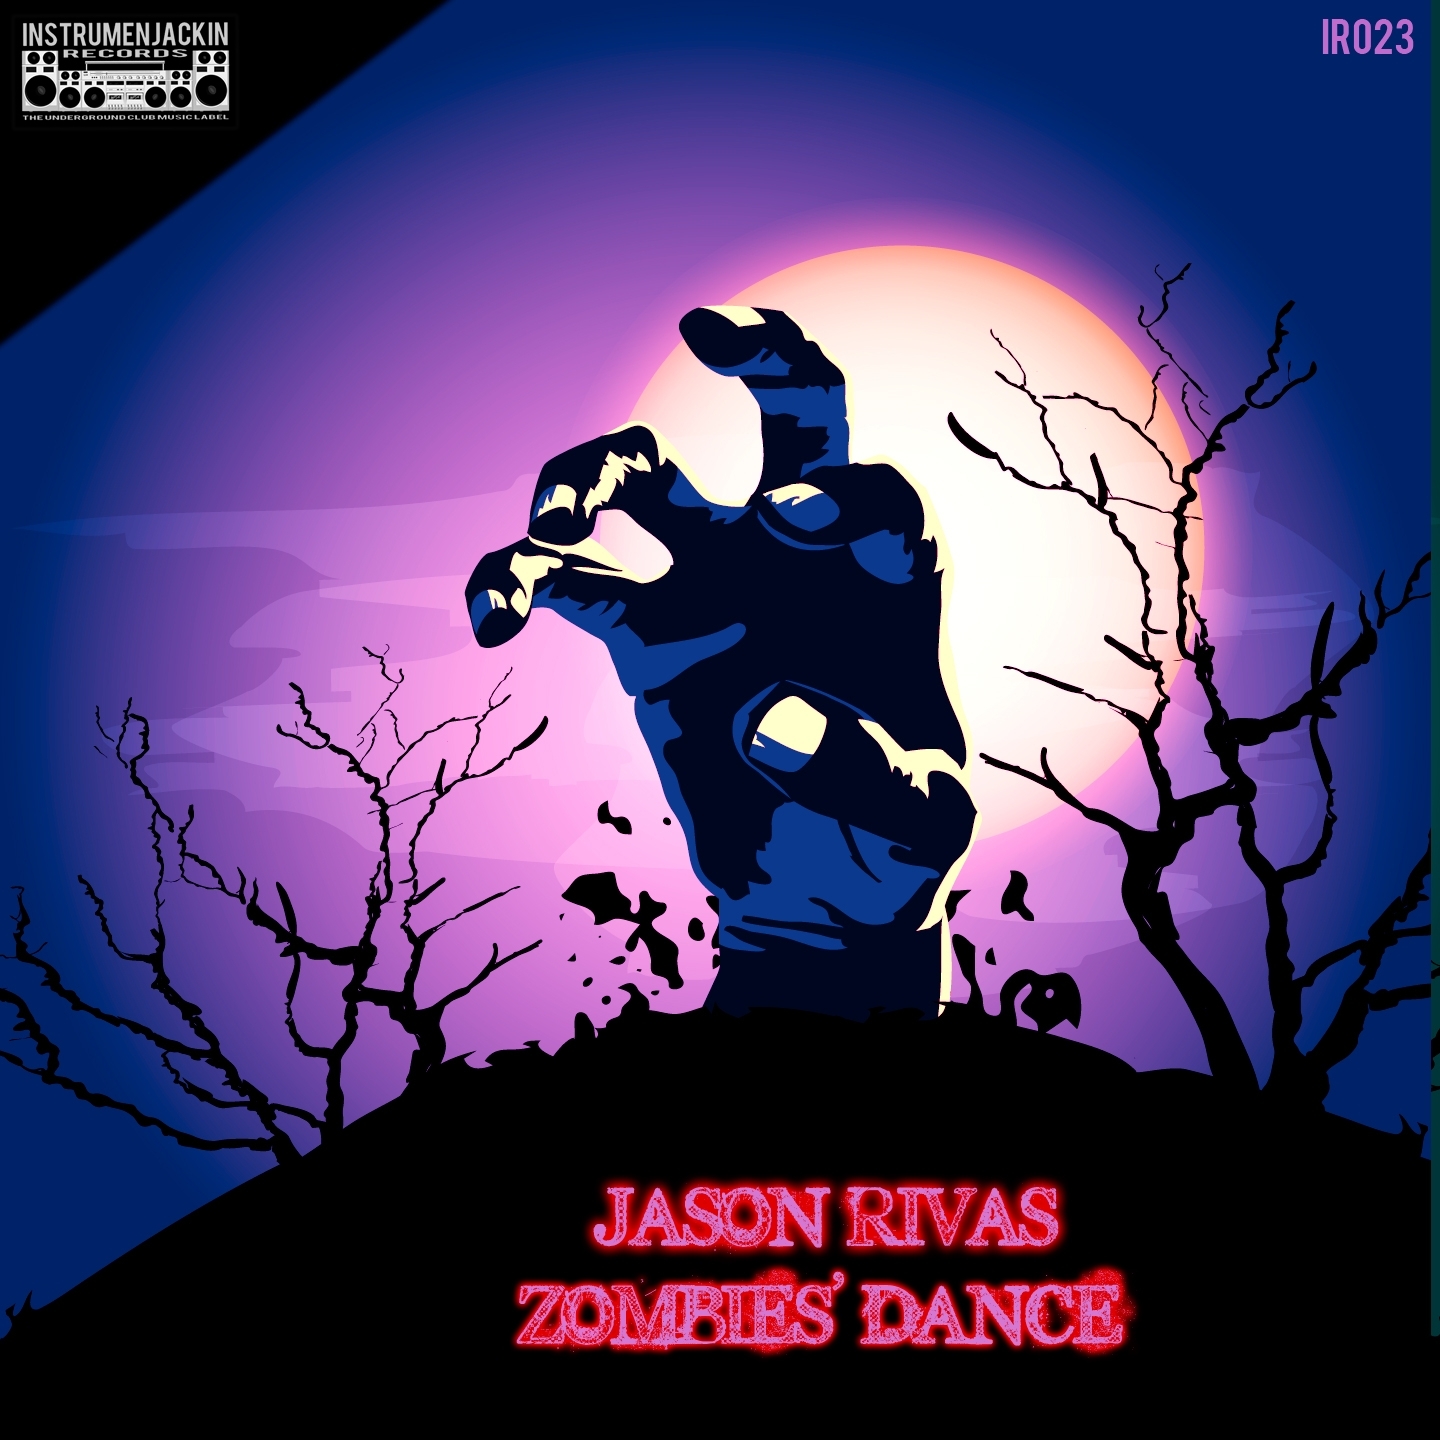 Zombies' Dance